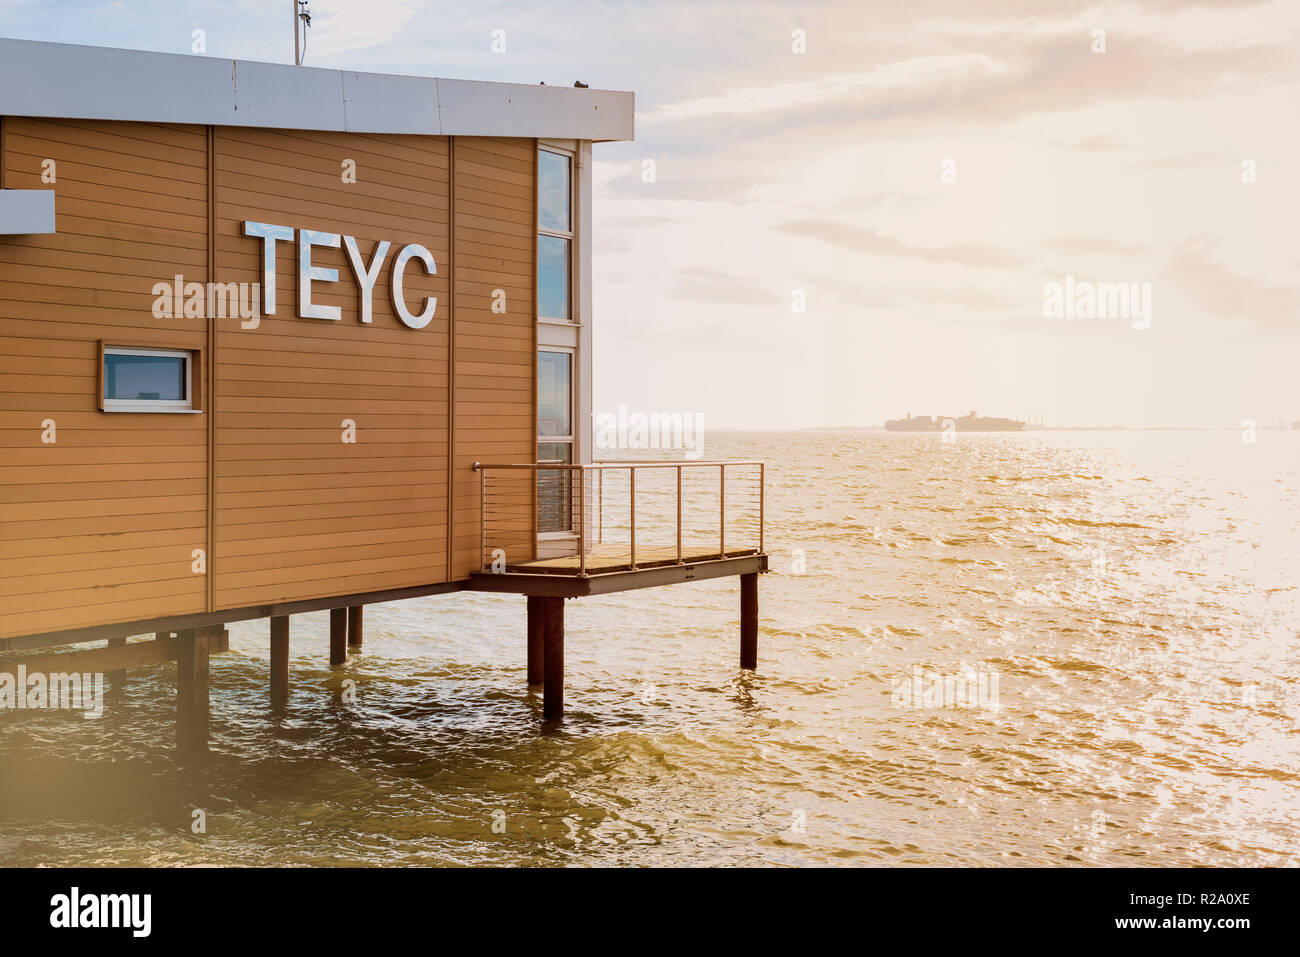 TEYC, Thames Estuary Yacht Club, Club Gebäude auf Stelzen am Wasser gebaut. Club Haus am Meer, Stockfoto